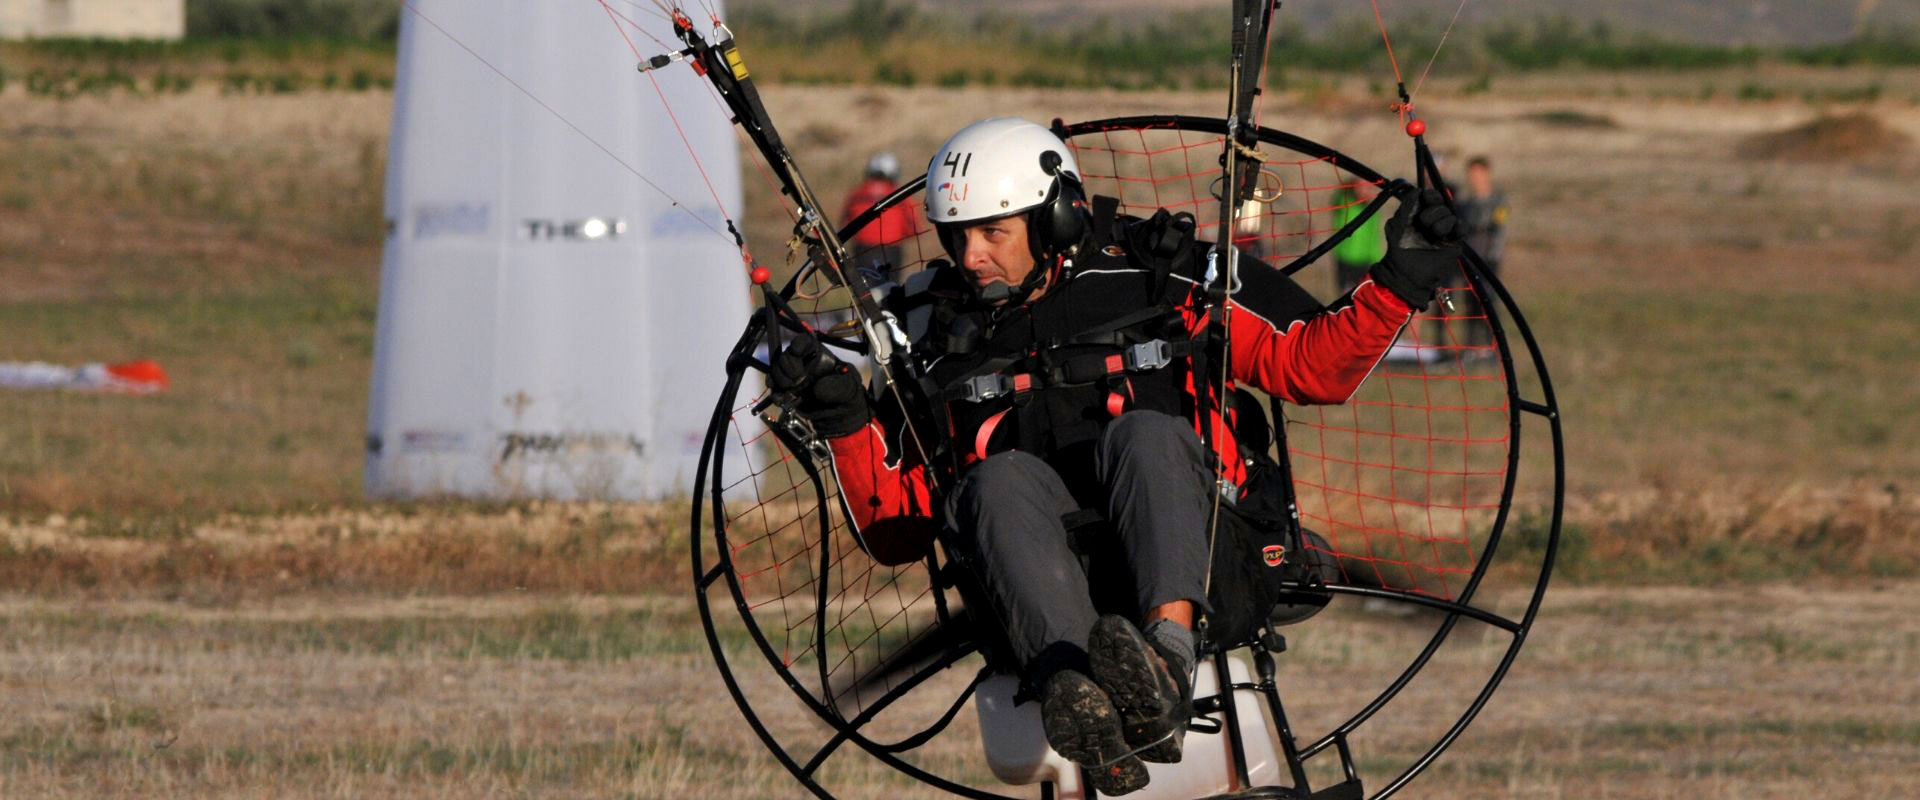 Cesar Maldonado en vuelo Paramotor